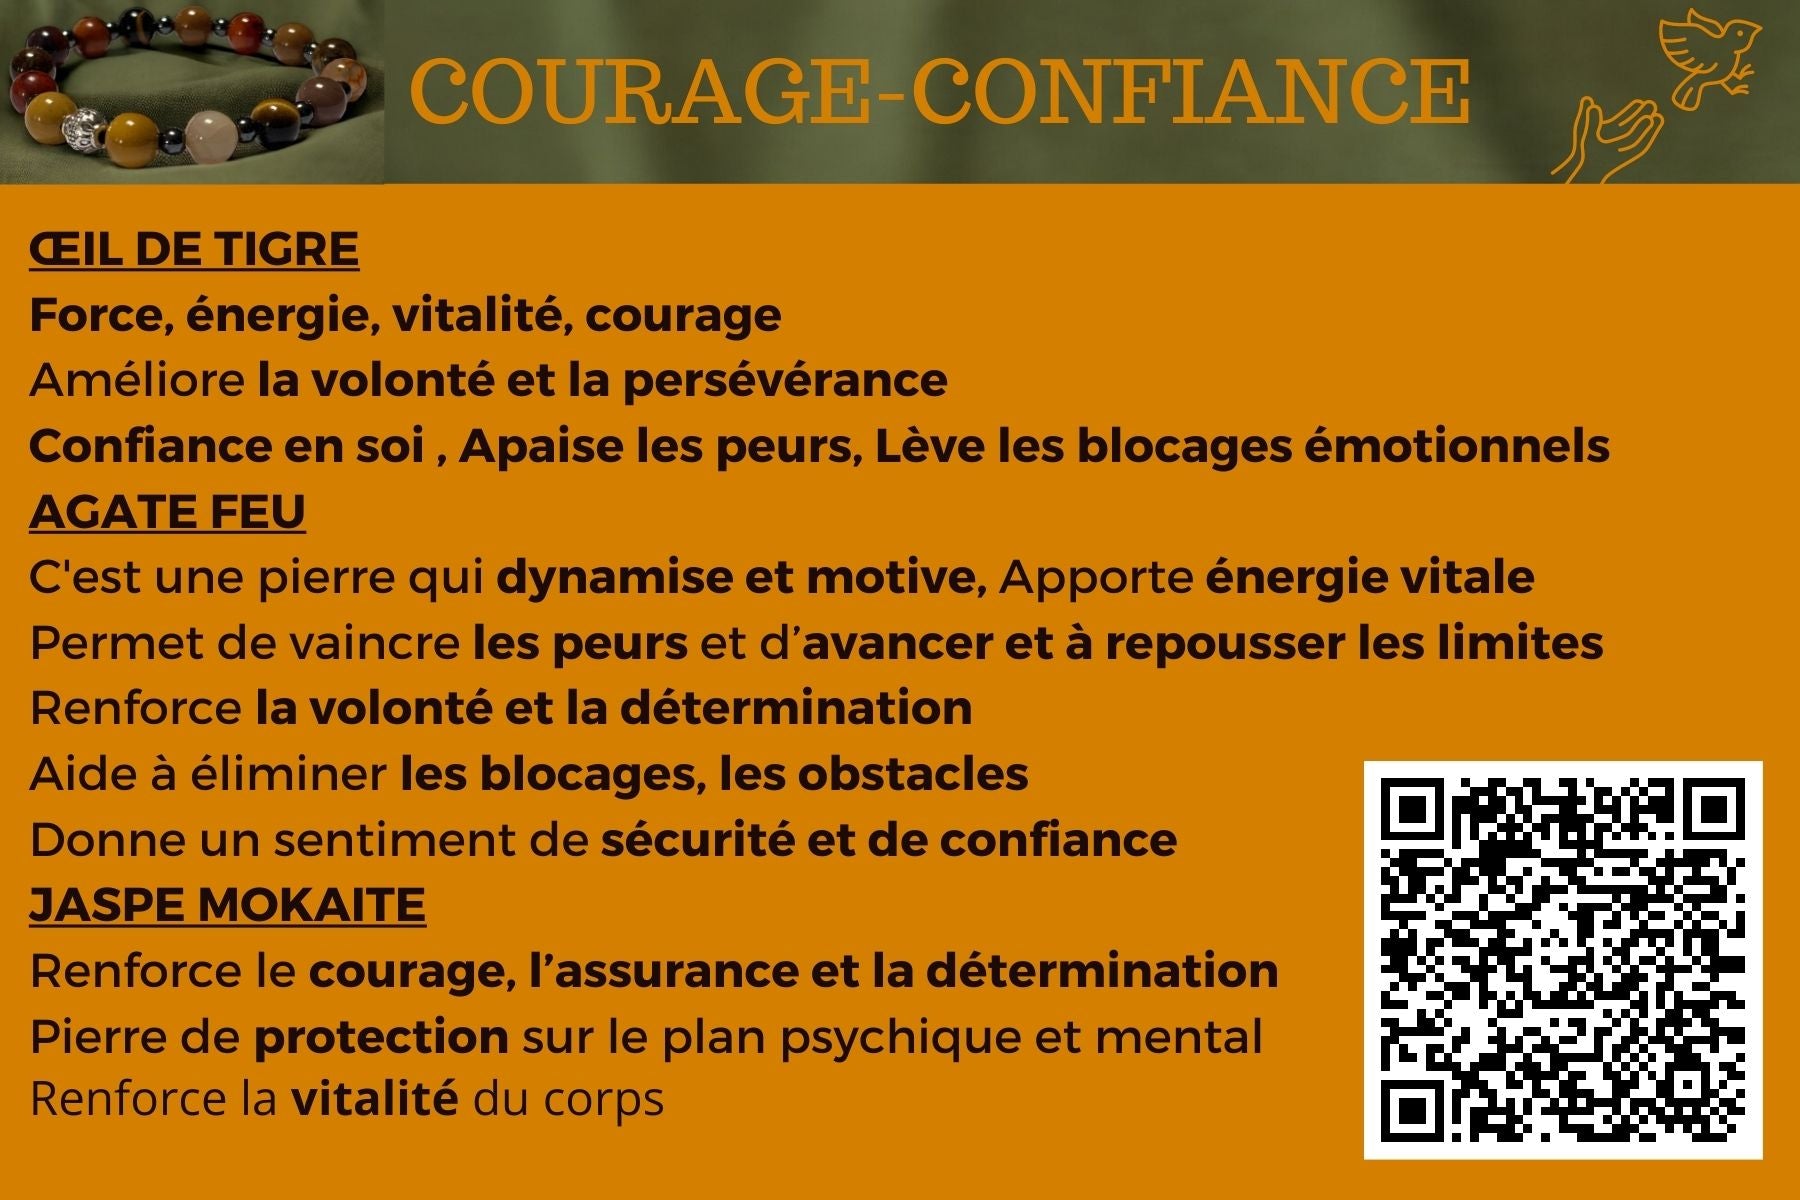 Bracelet "COURAGE-CONFIANCE"